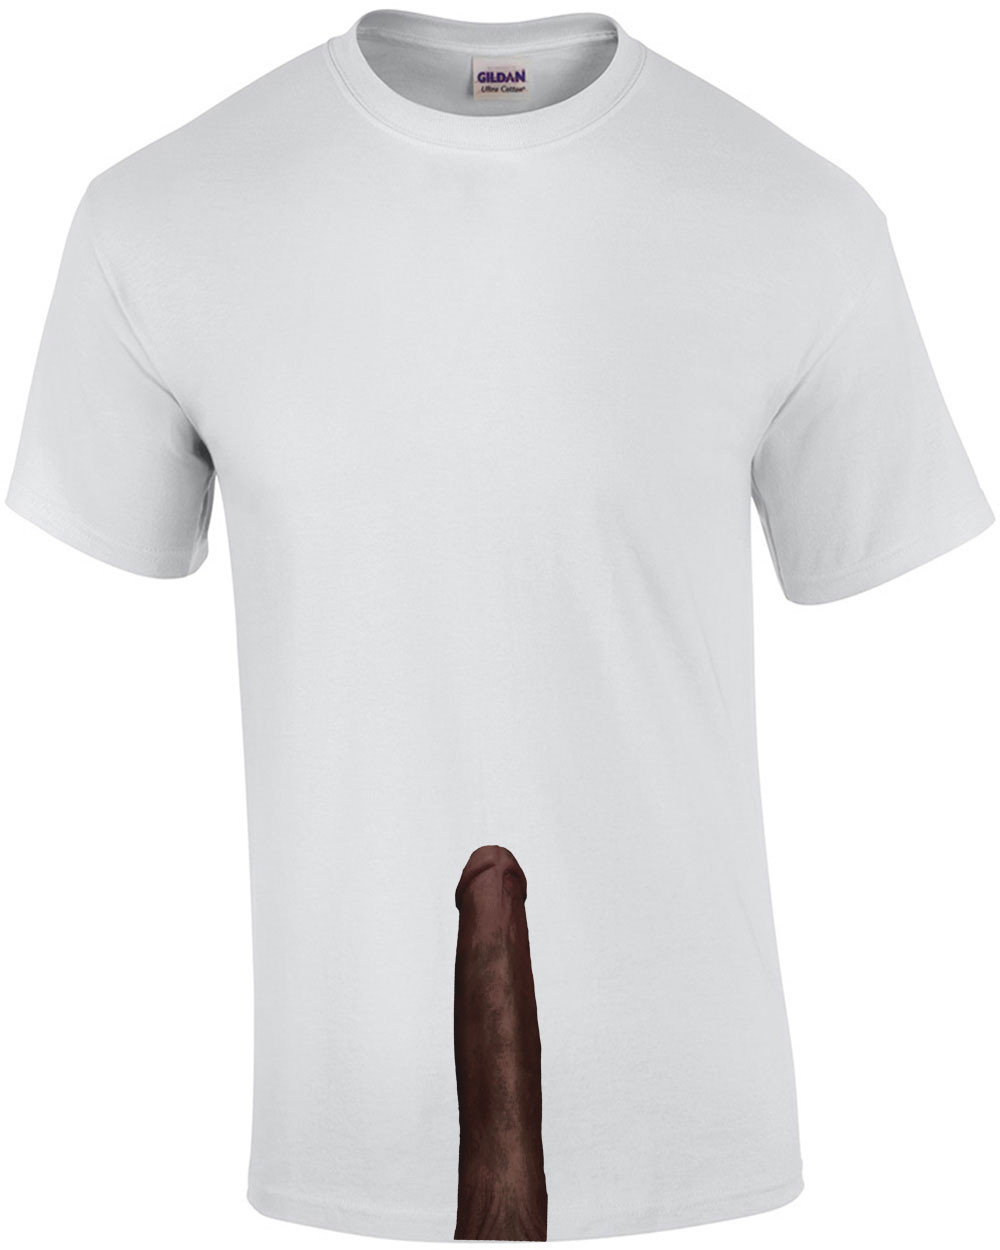 Dick Shirt 25